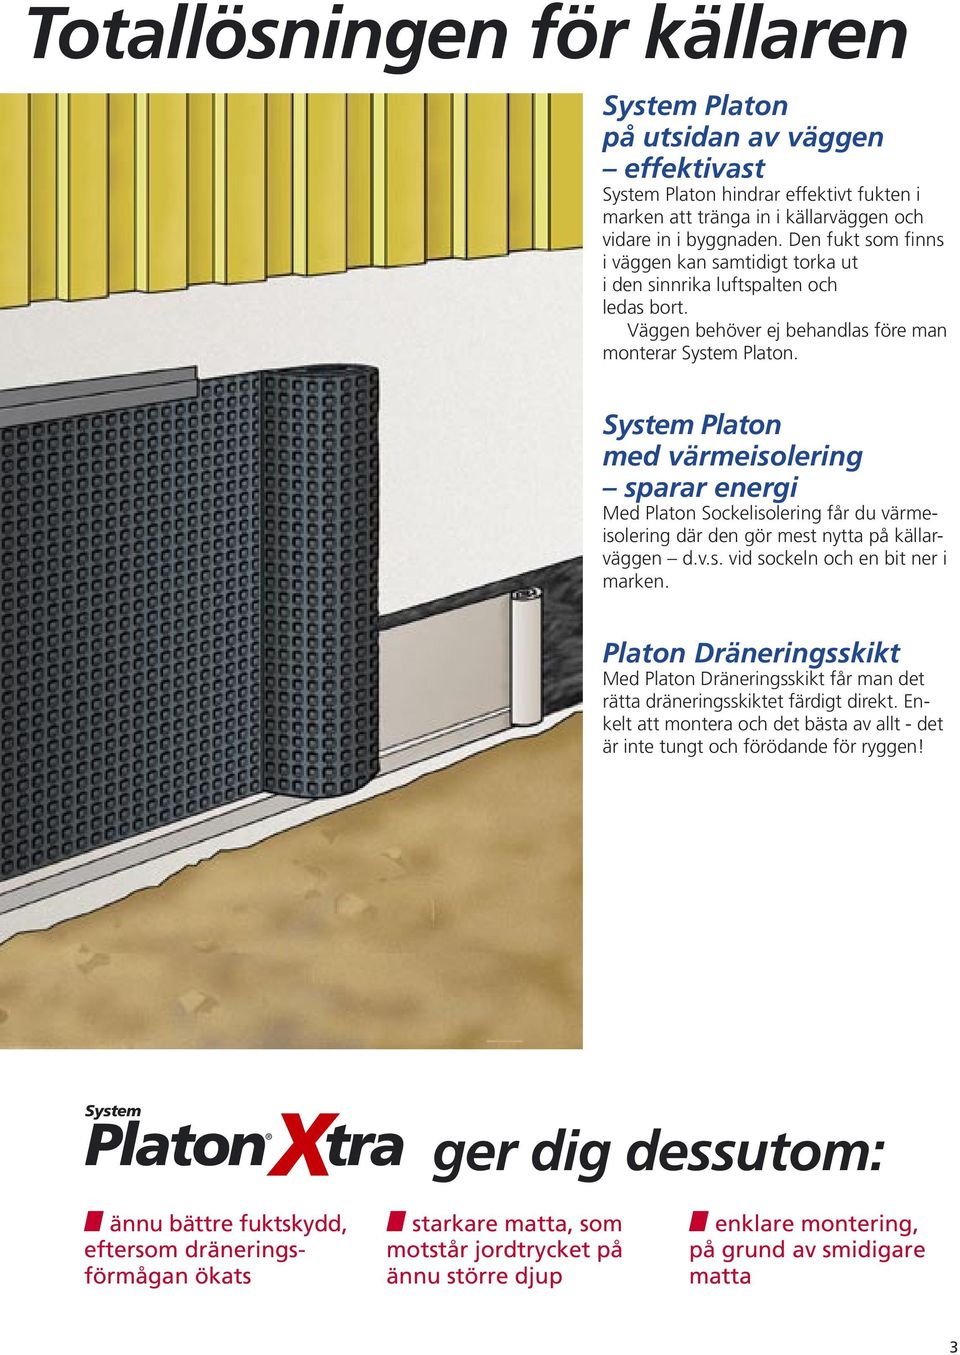 System Platon med värmeisolering sparar energi Med Platon Sockelisolering får du värmeisolering där den gör mest nytta på källarväggen d.v.s. vid sockeln och en bit ner i marken.